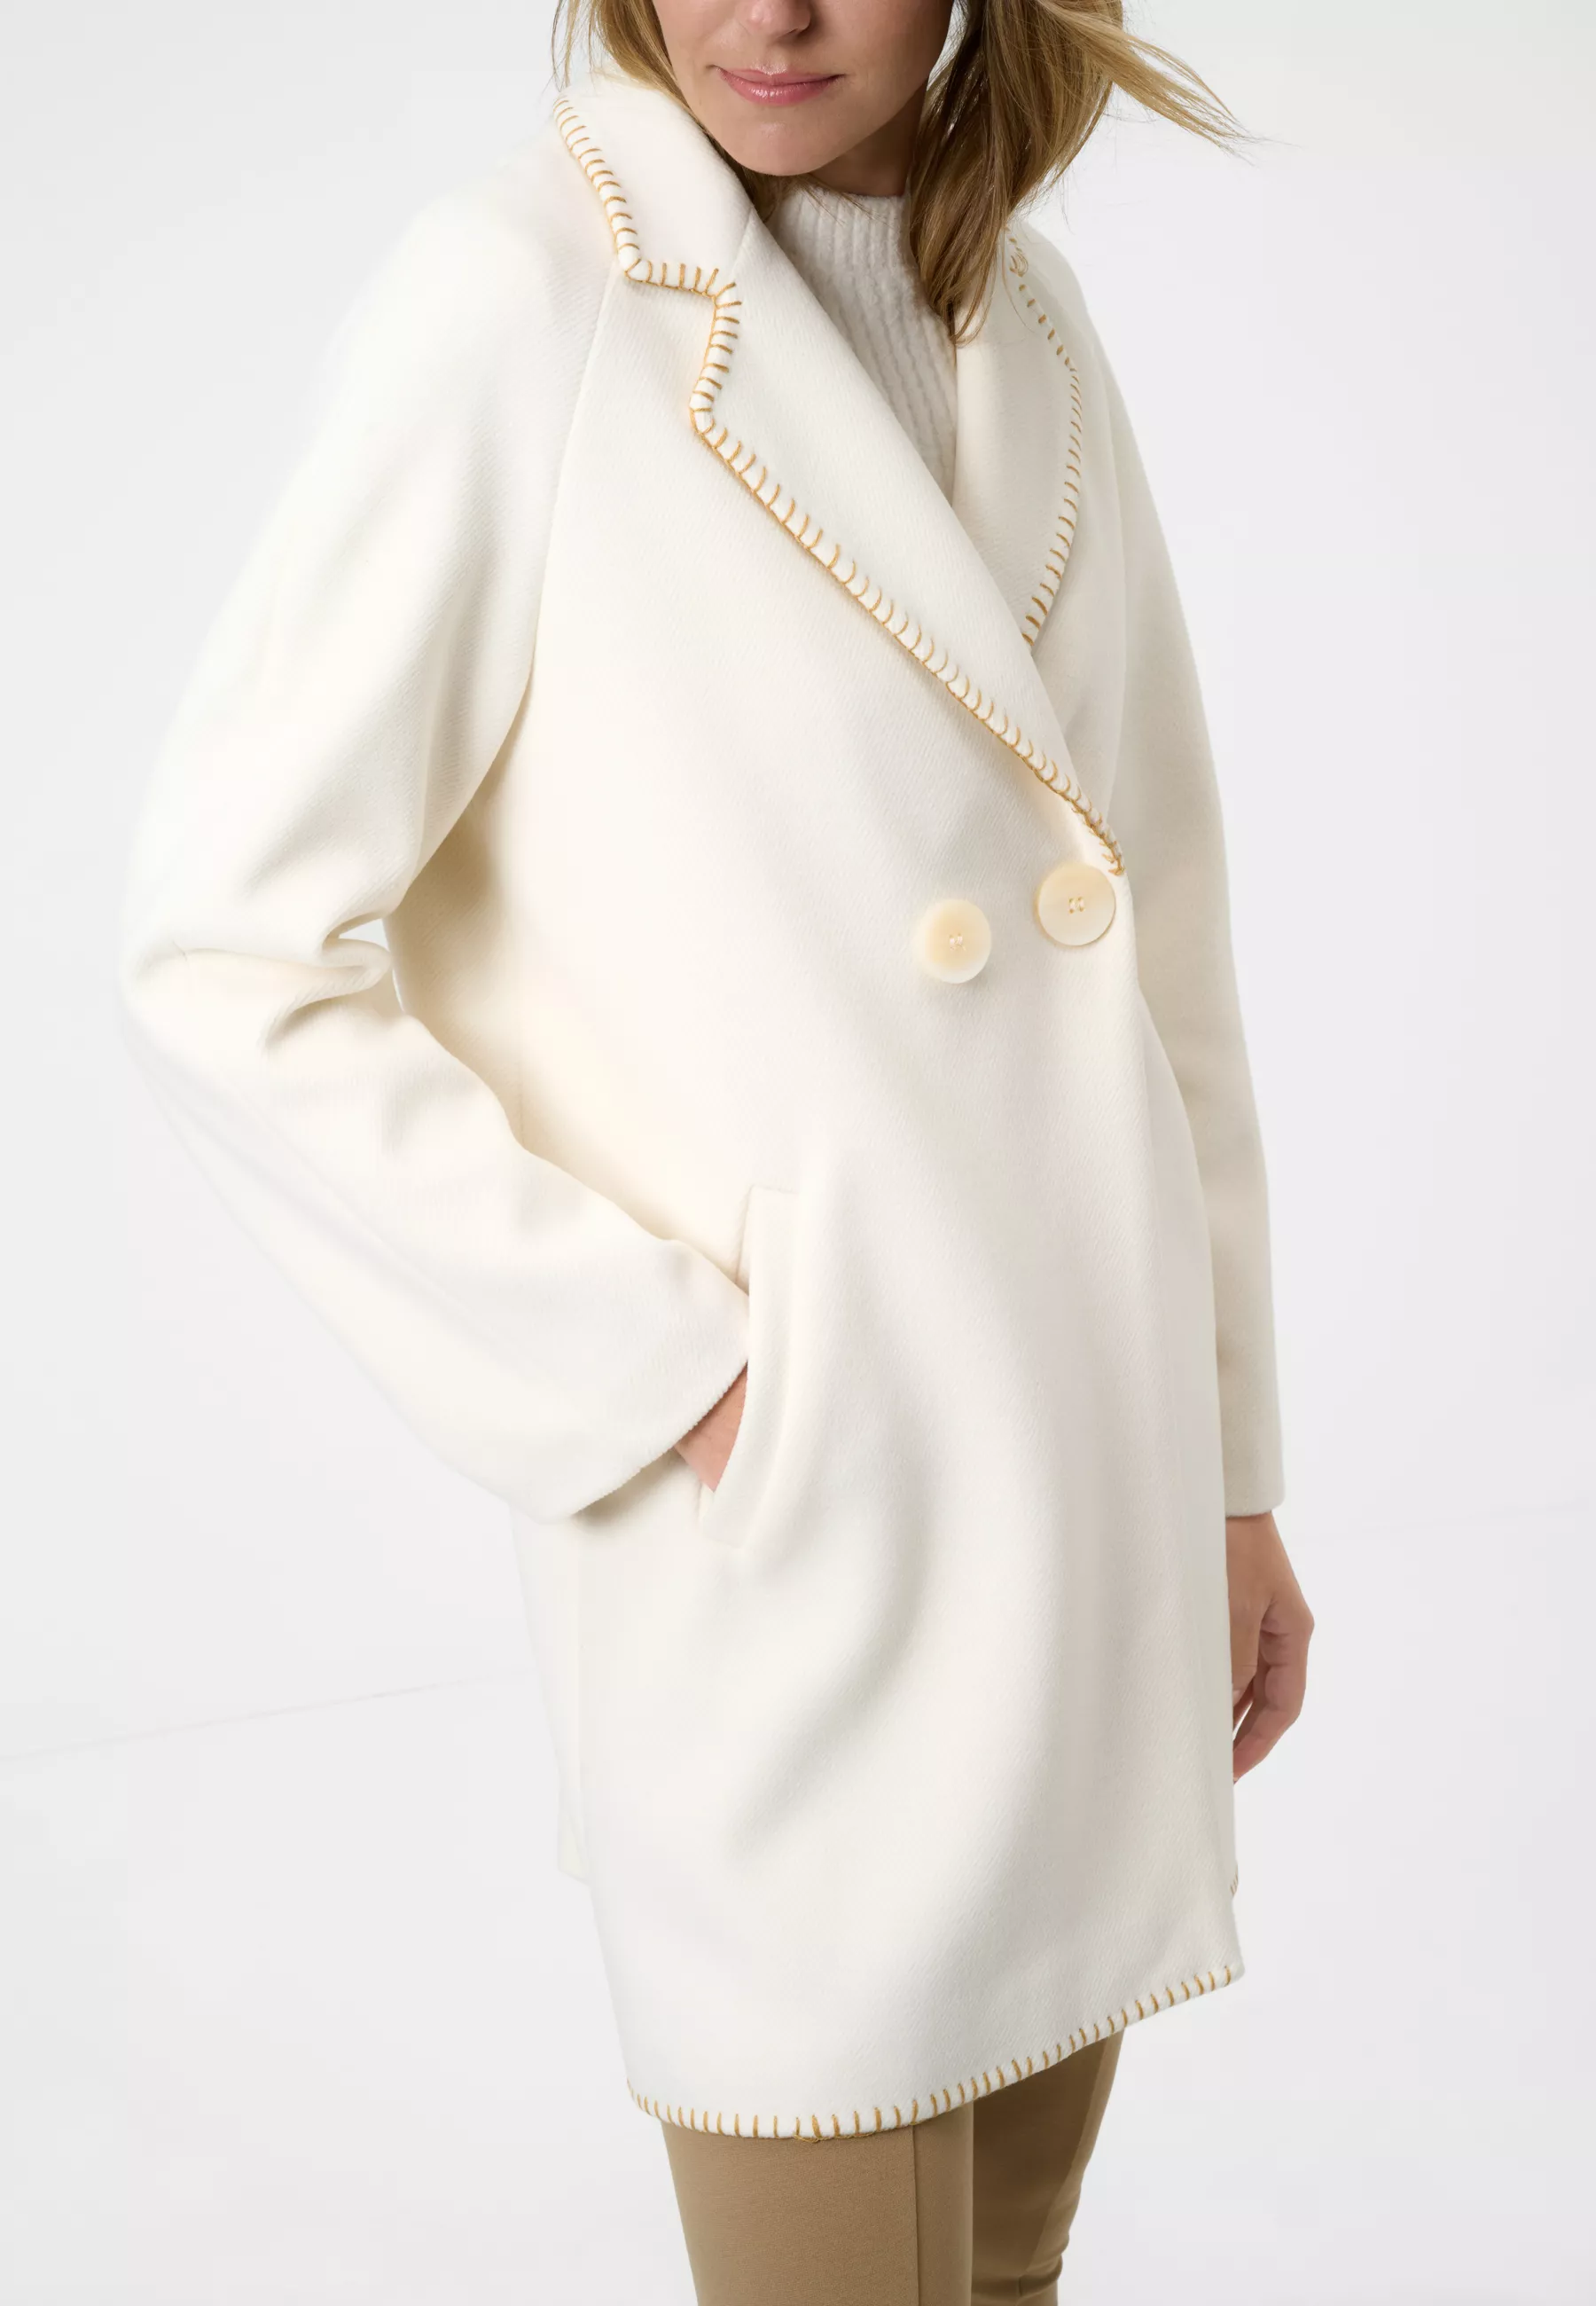 Damen Textil Mantel Silvia in Weiß von Ricano, Detailansicht am Model